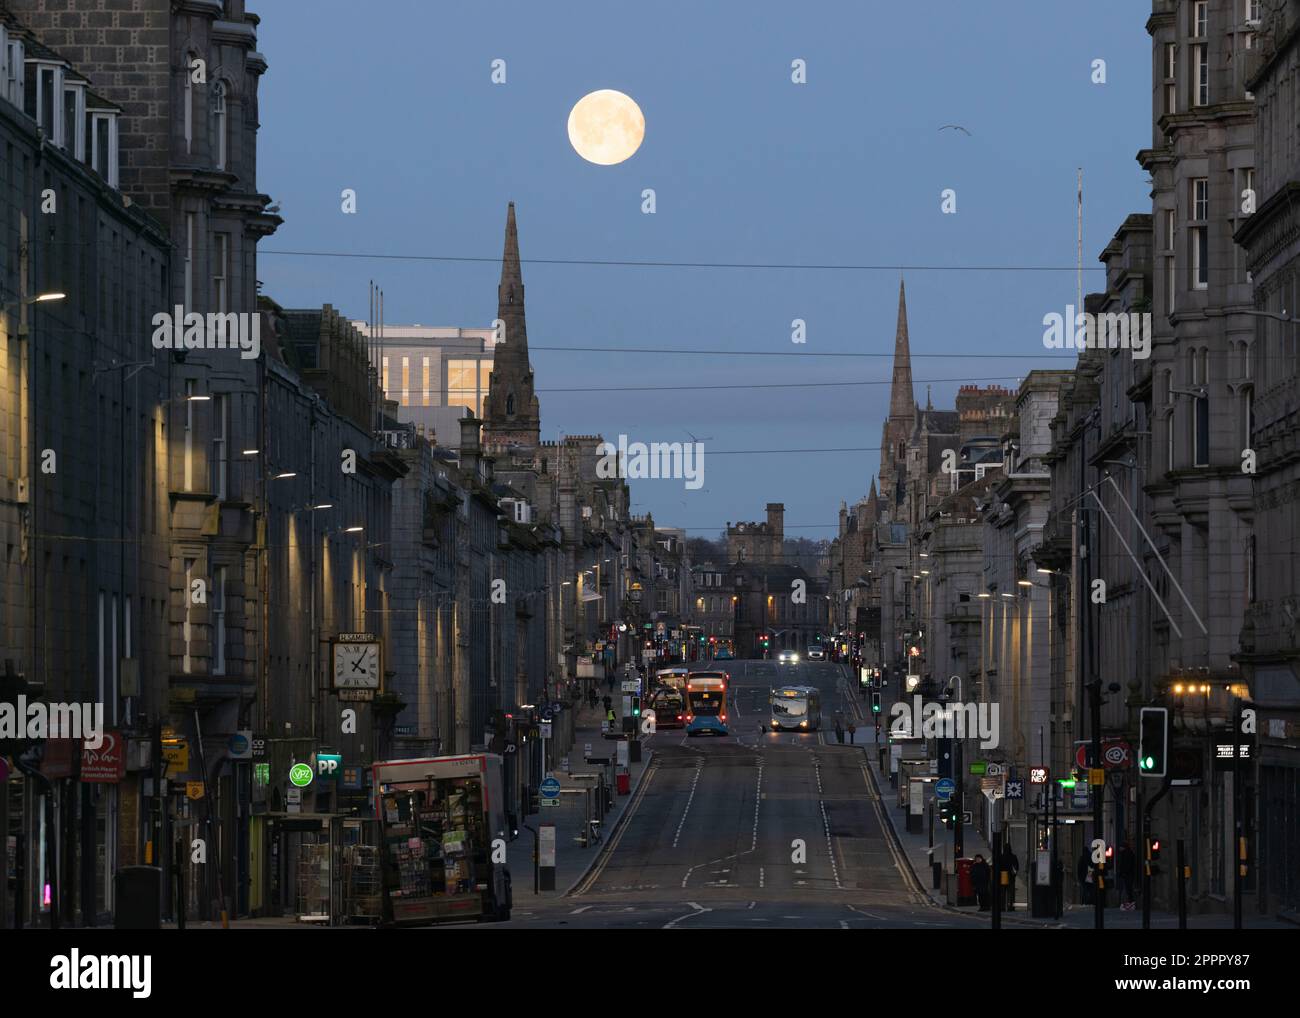 Vue sur Union Street dans le centre-ville d'Aberdeen avant l'aube avec une pleine lune (la lune rose d'avril) cadre entre deux clochers de l'église au West End Banque D'Images